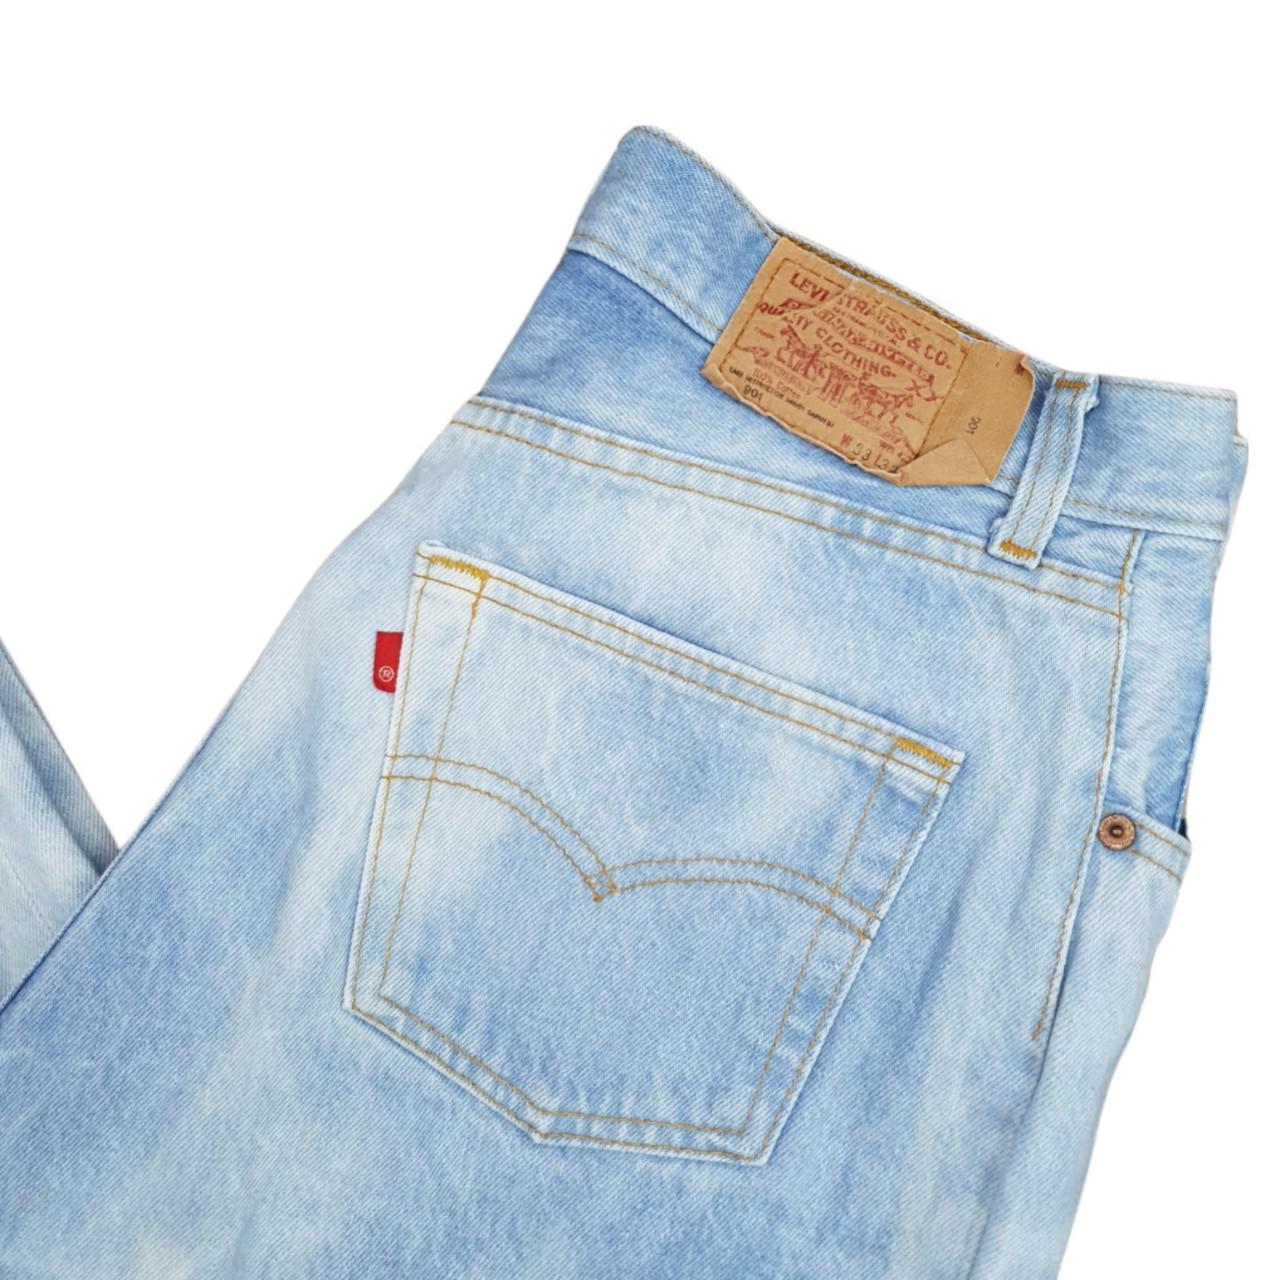 Vintage Levi's 901 Jeans fit as a W30 L32 -... - Depop